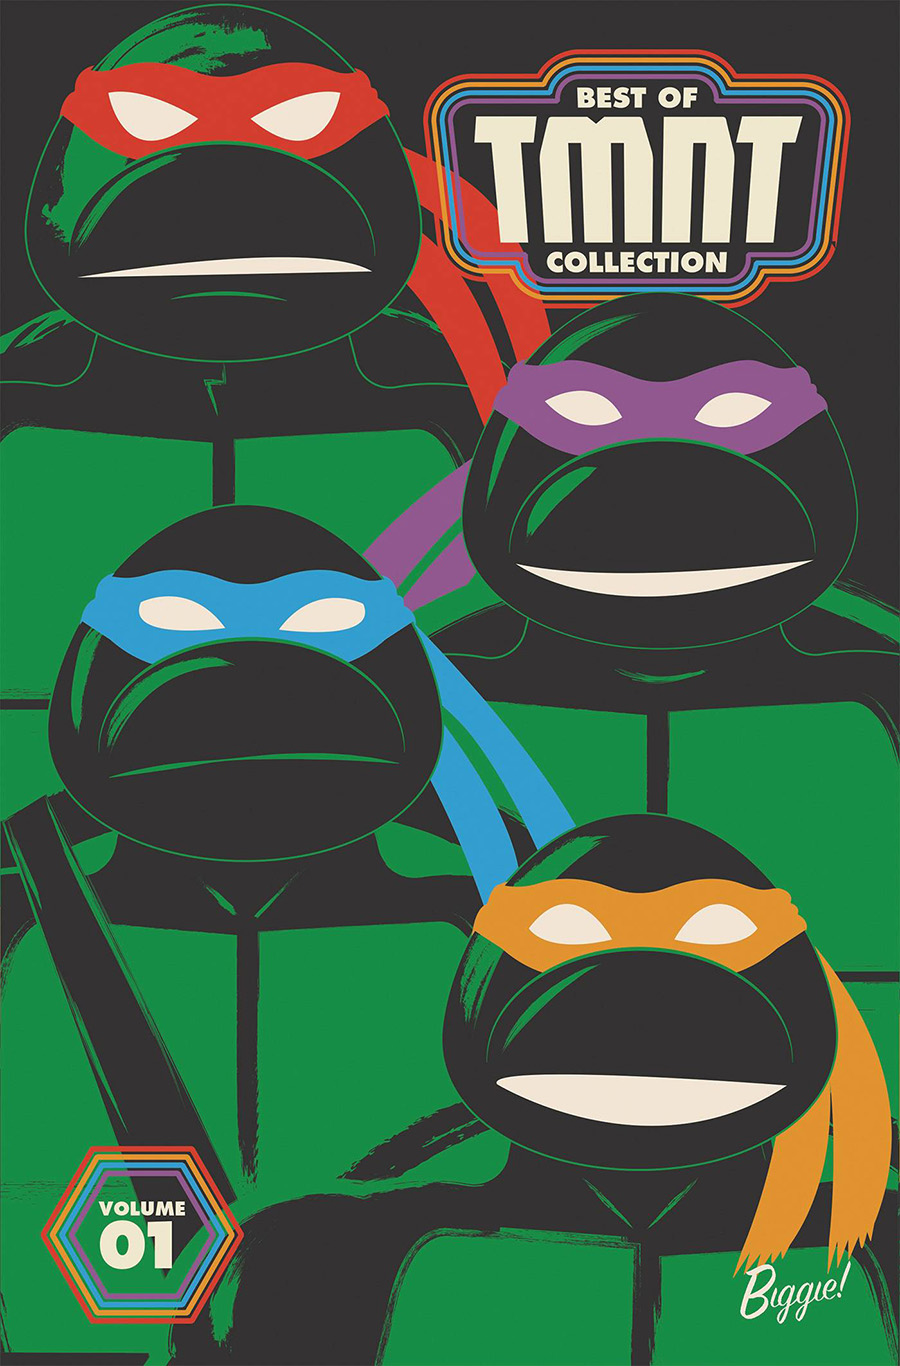 Teenage Mutant Ninja Turtles Best Of Teenage Mutant Ninja Turtles Collection Vol 1 TP